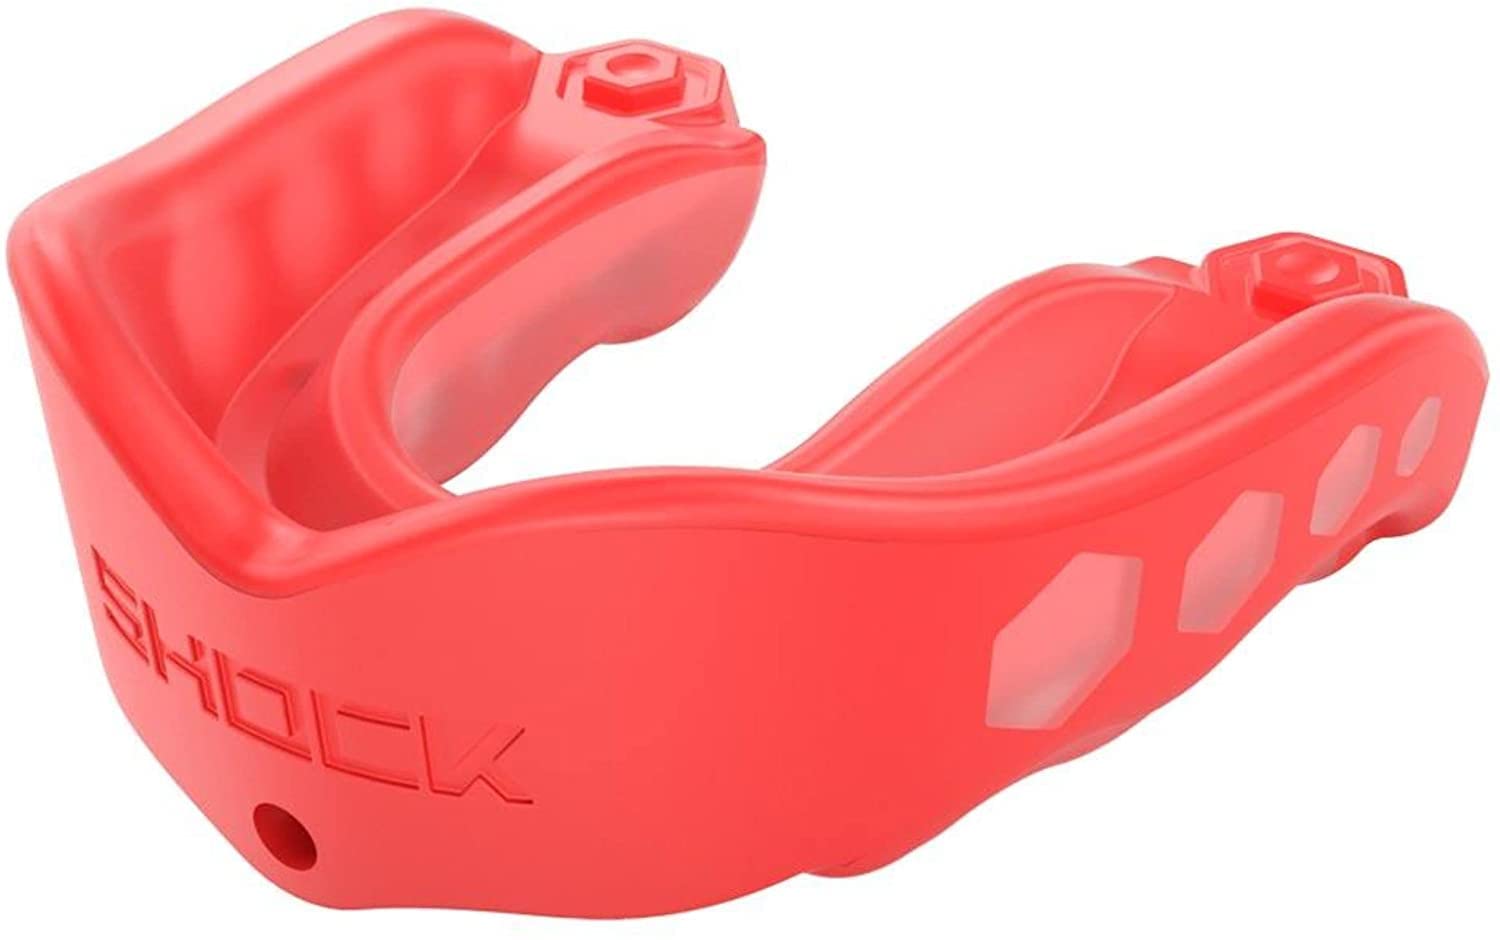 Shock Doctor Gel-Max-Mundschutz für Schutz beim Sport, bequemes dreilagiges Design in Größen für Kinder und Erwachsene